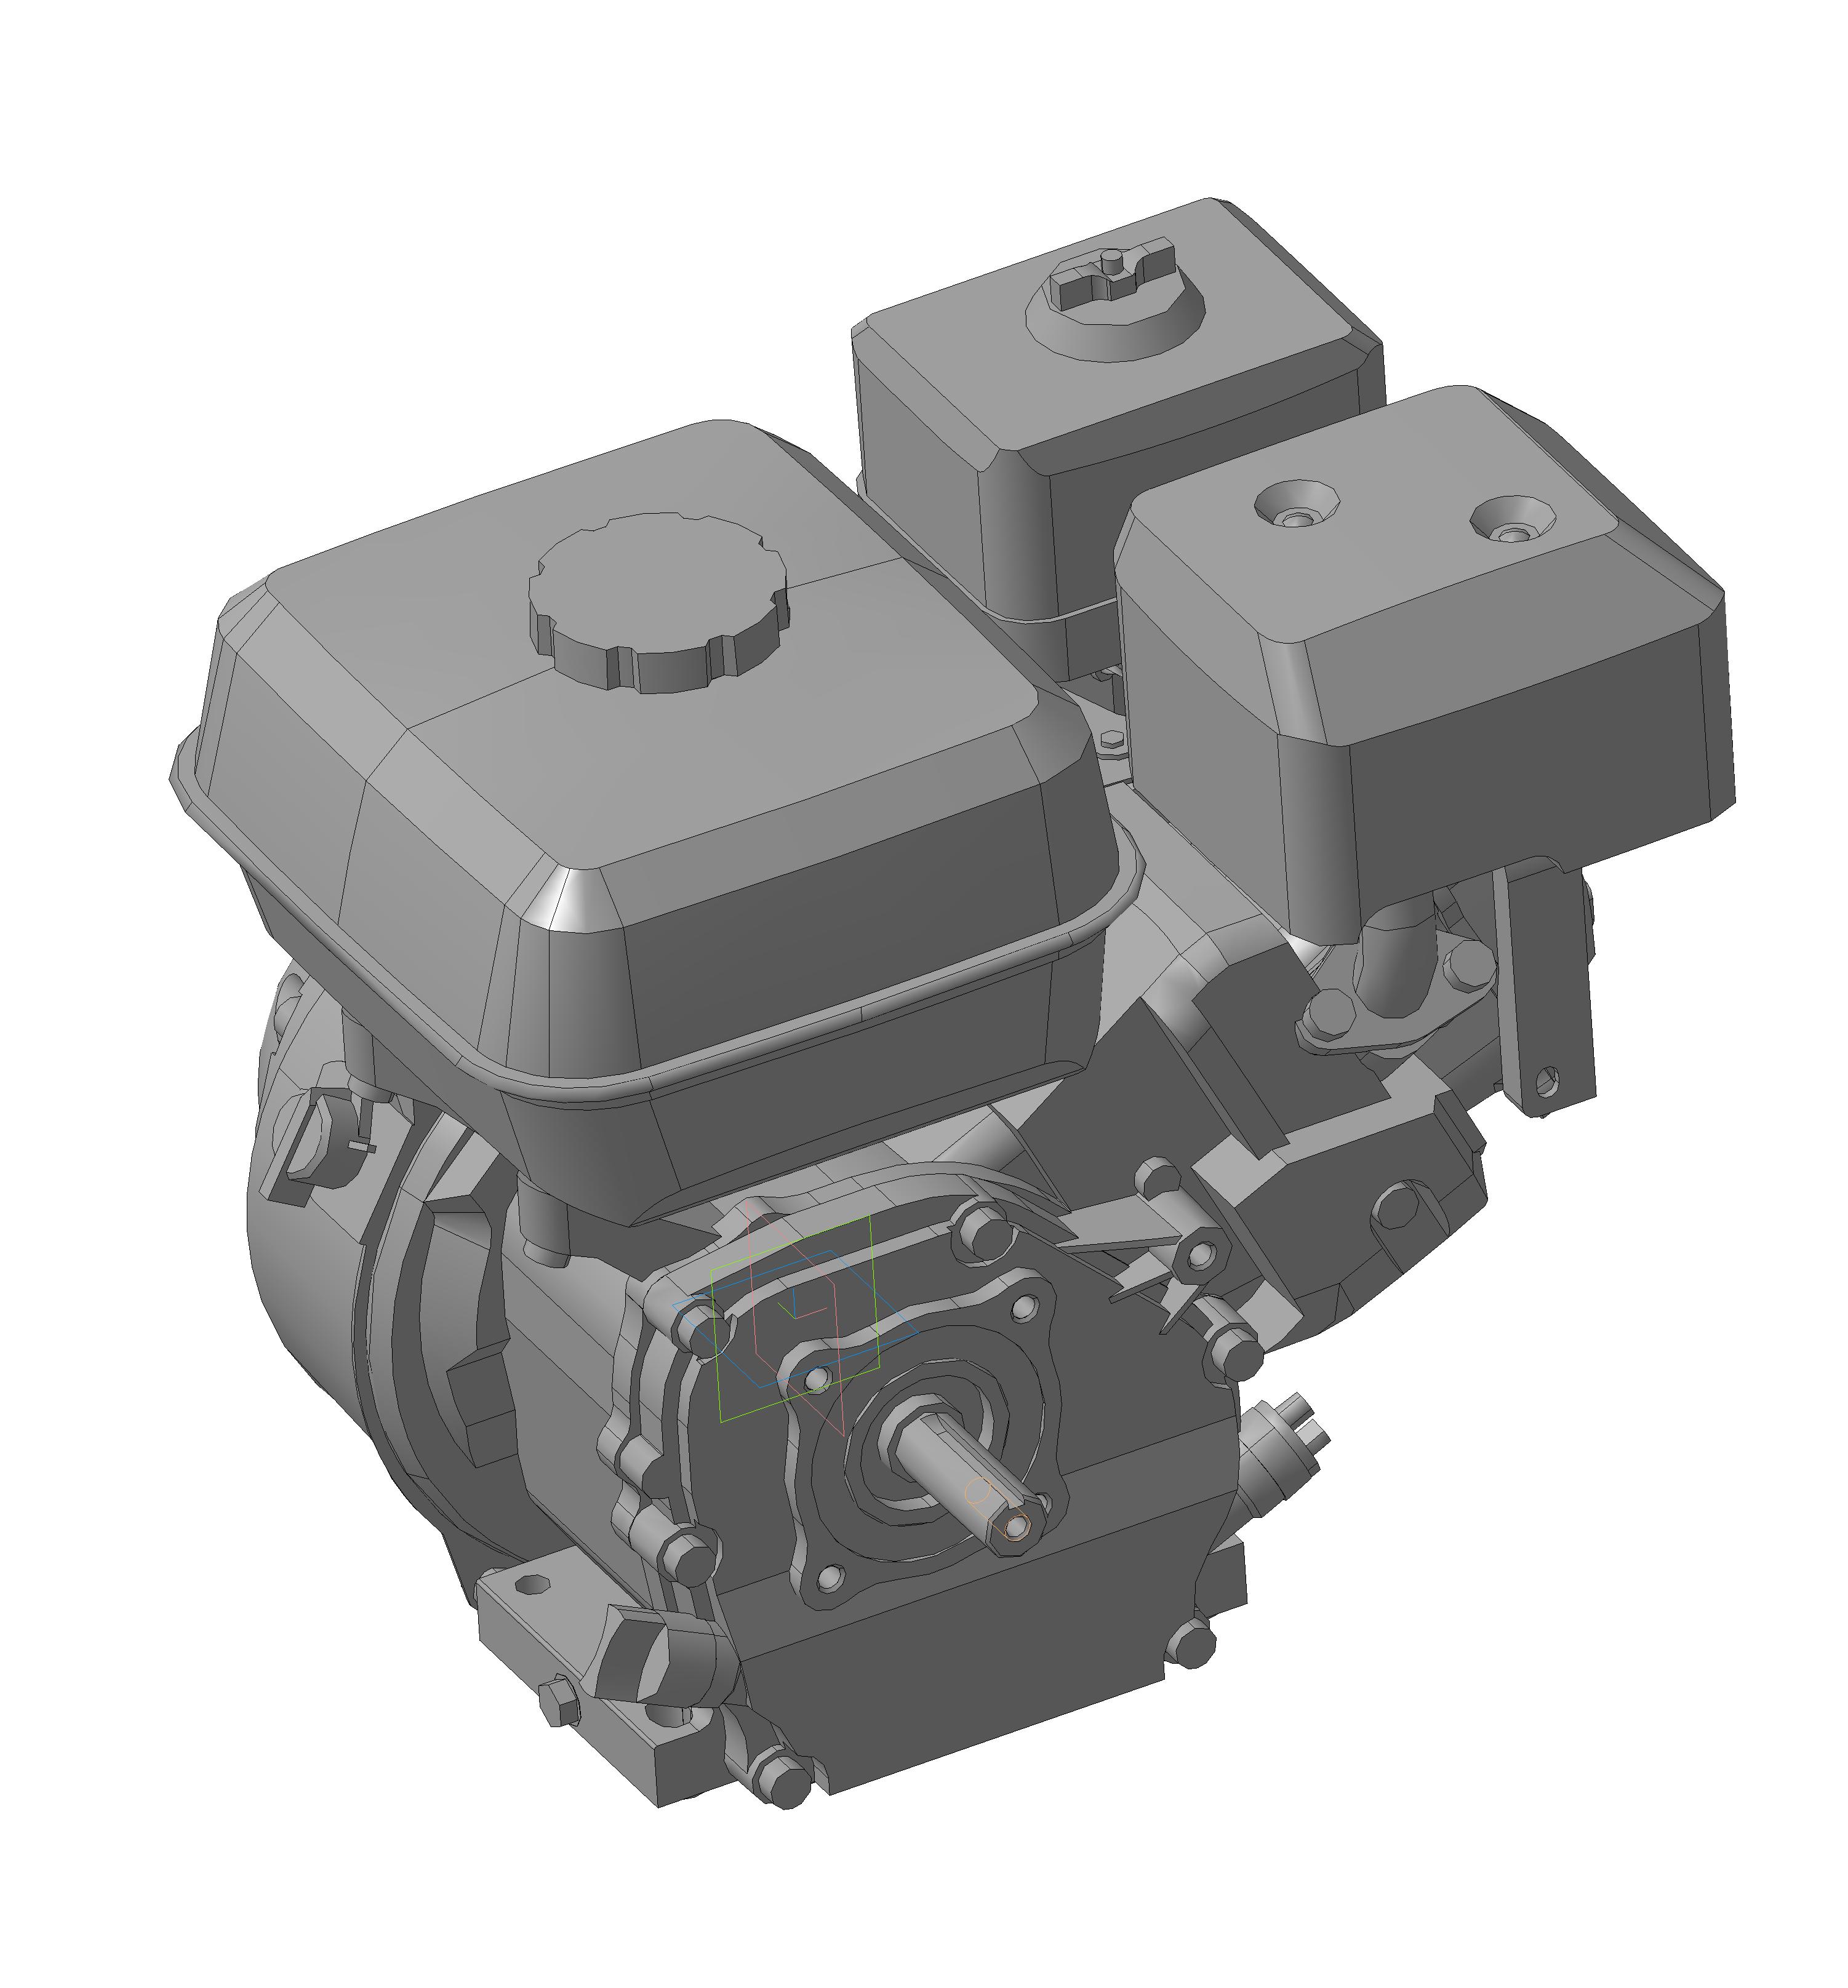 Двигатель  168F-2 6,5 лошадиных сил - Чертежи, 3D Модели, Проекты .